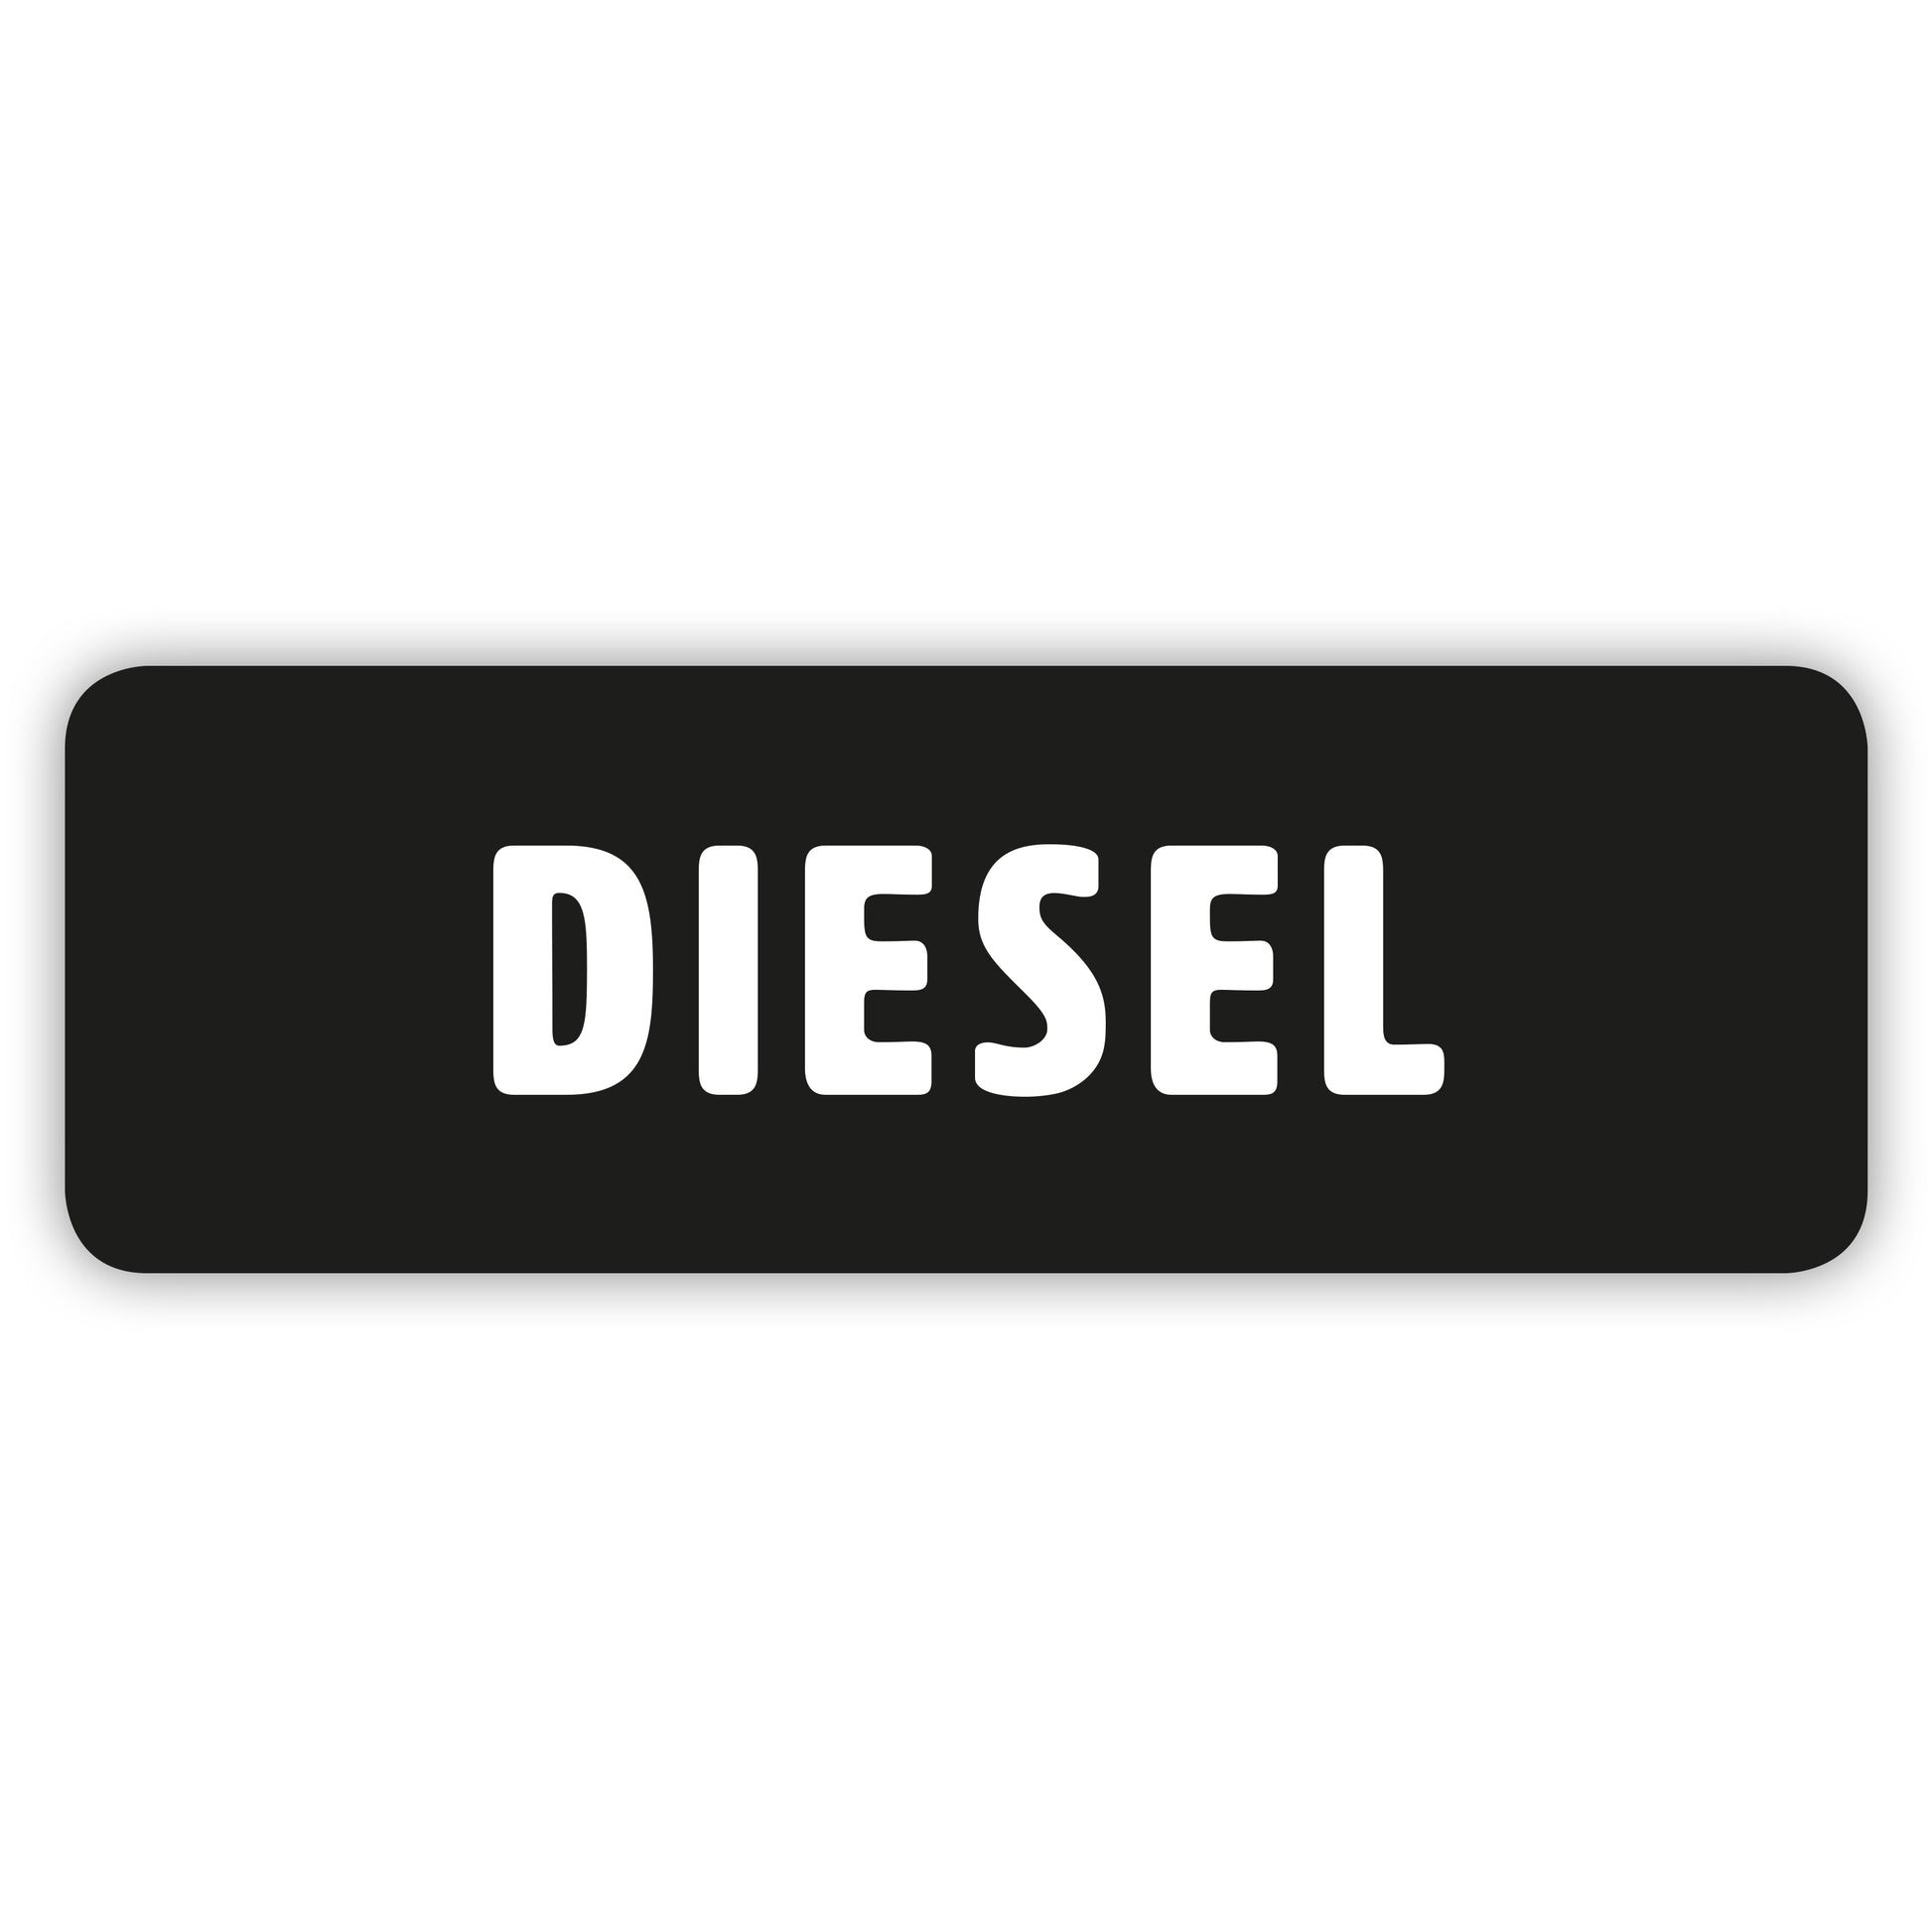 Diesel Only Sticker by Gobrecht & Ulrich